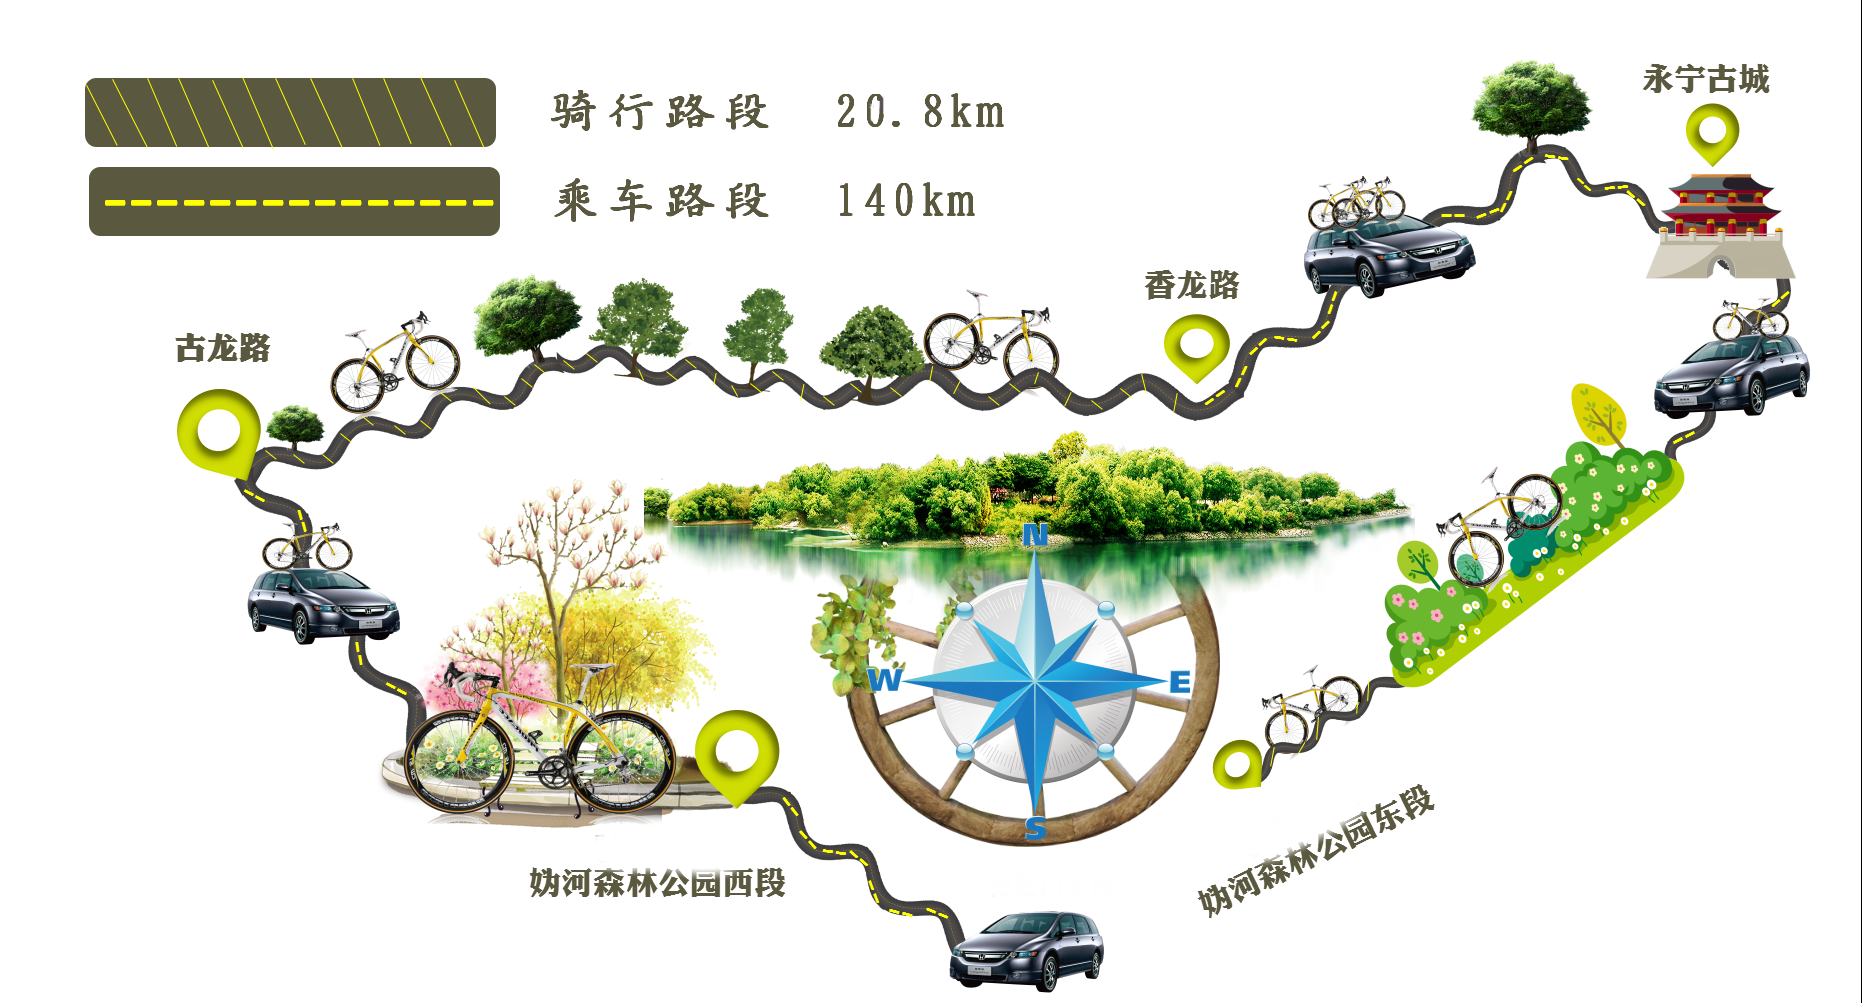 京郊骑行攻略盘点北京周边适合骑行的线路